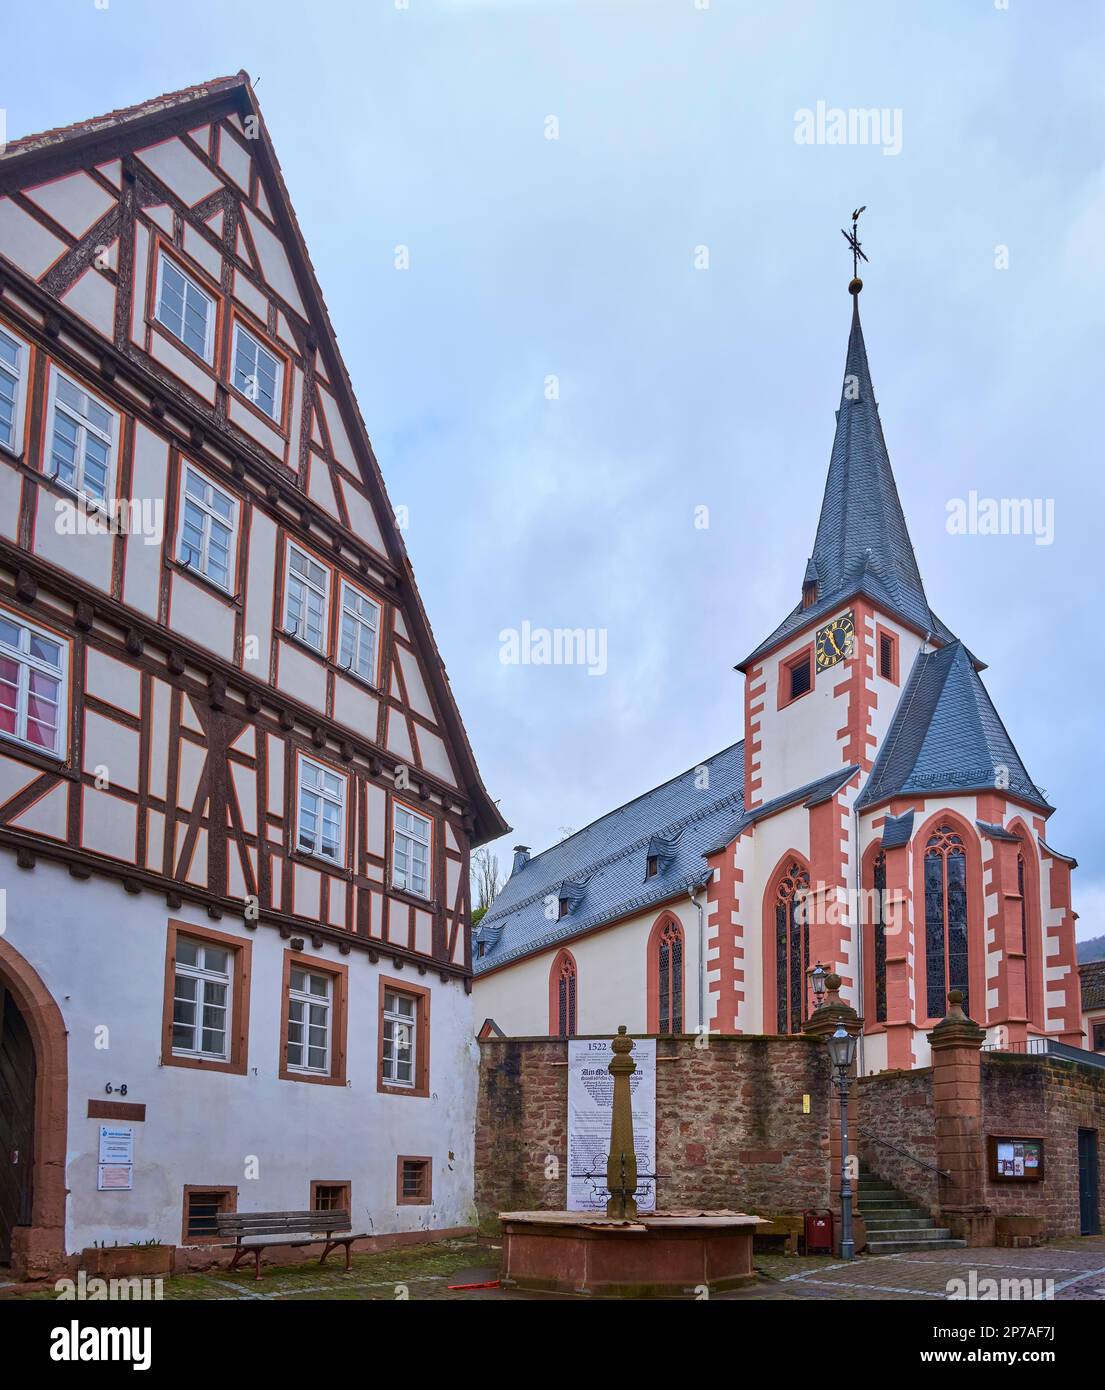 Die Evangelische Kirche Neckarsteinach ist ein spätgotisches Sakralgebäude in der Stadt Neckarsteinach, Stadt der vier Schlösser, Hessen, Deutschland. Stockfoto